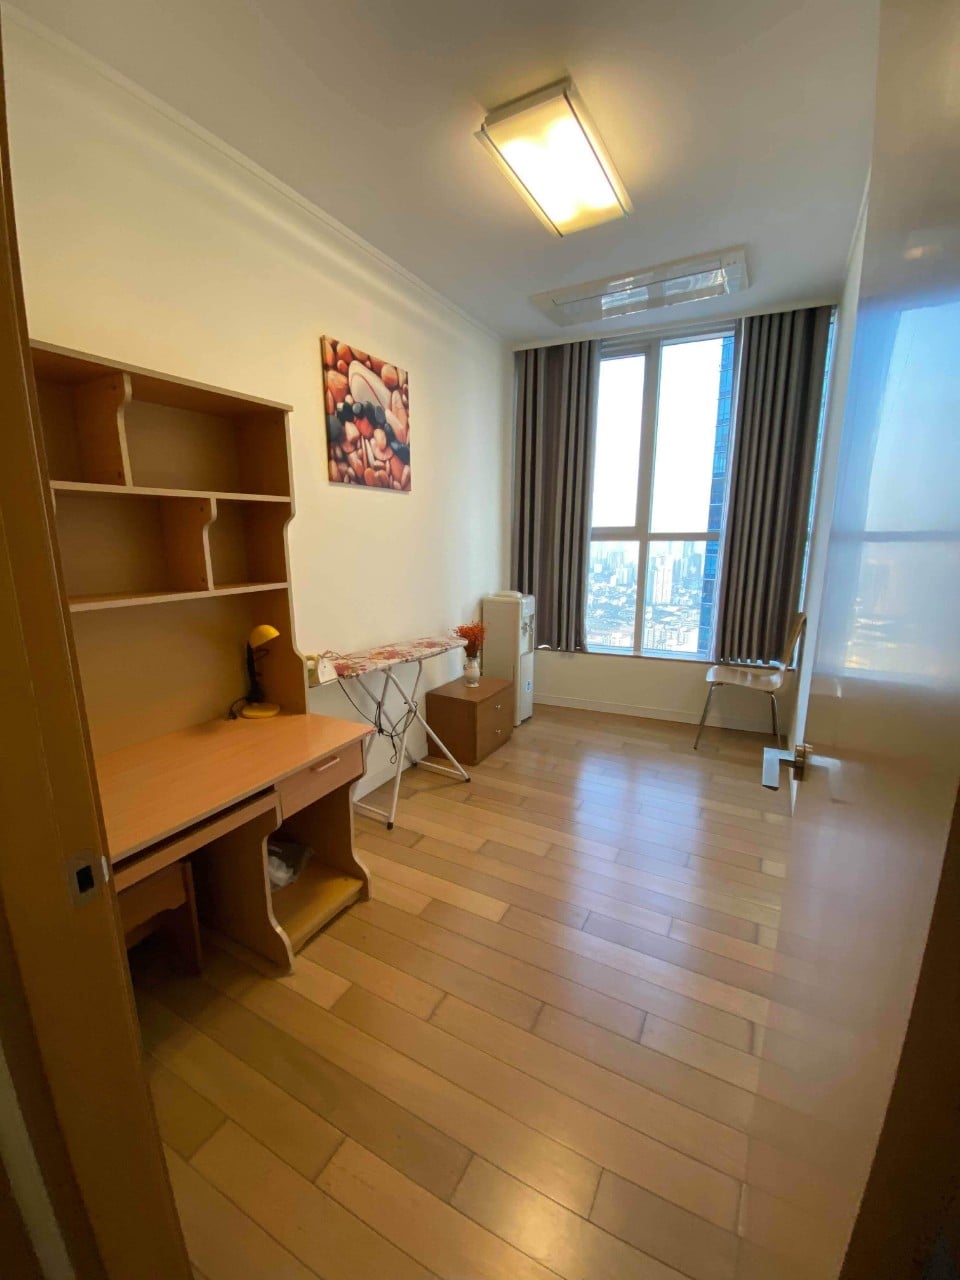 Cho thuê căn hộ 3 phòng ngủ chung cư Keangnam full nội thất cao cấp, vào ở được ngay (ảnh thật) 998638